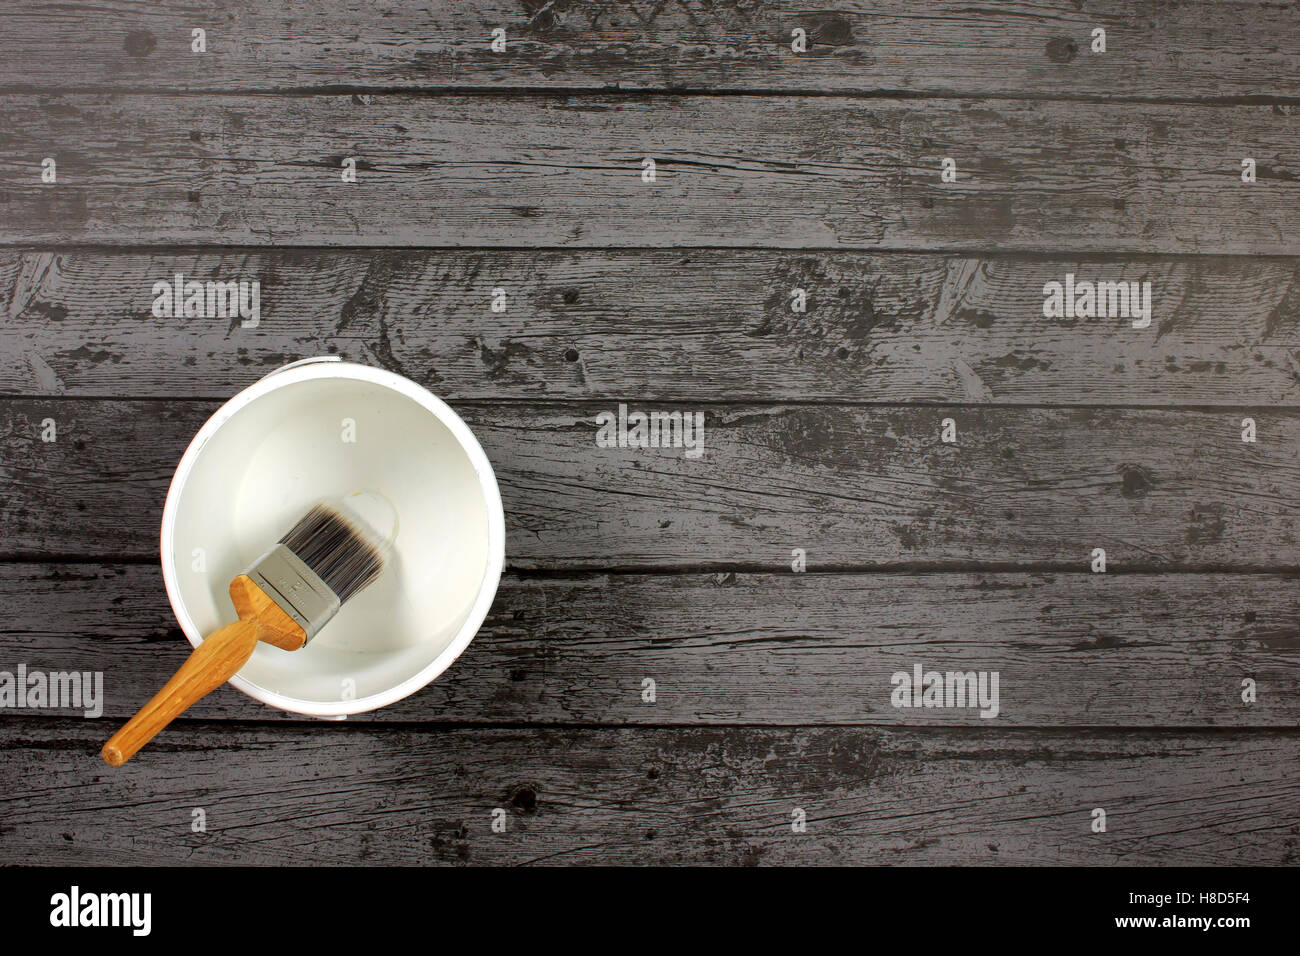 Pinsel, sitzen in einem leeren Weißlack Kessel gefüllt auf einem dunklen grauen Boden-Internat Stockfoto